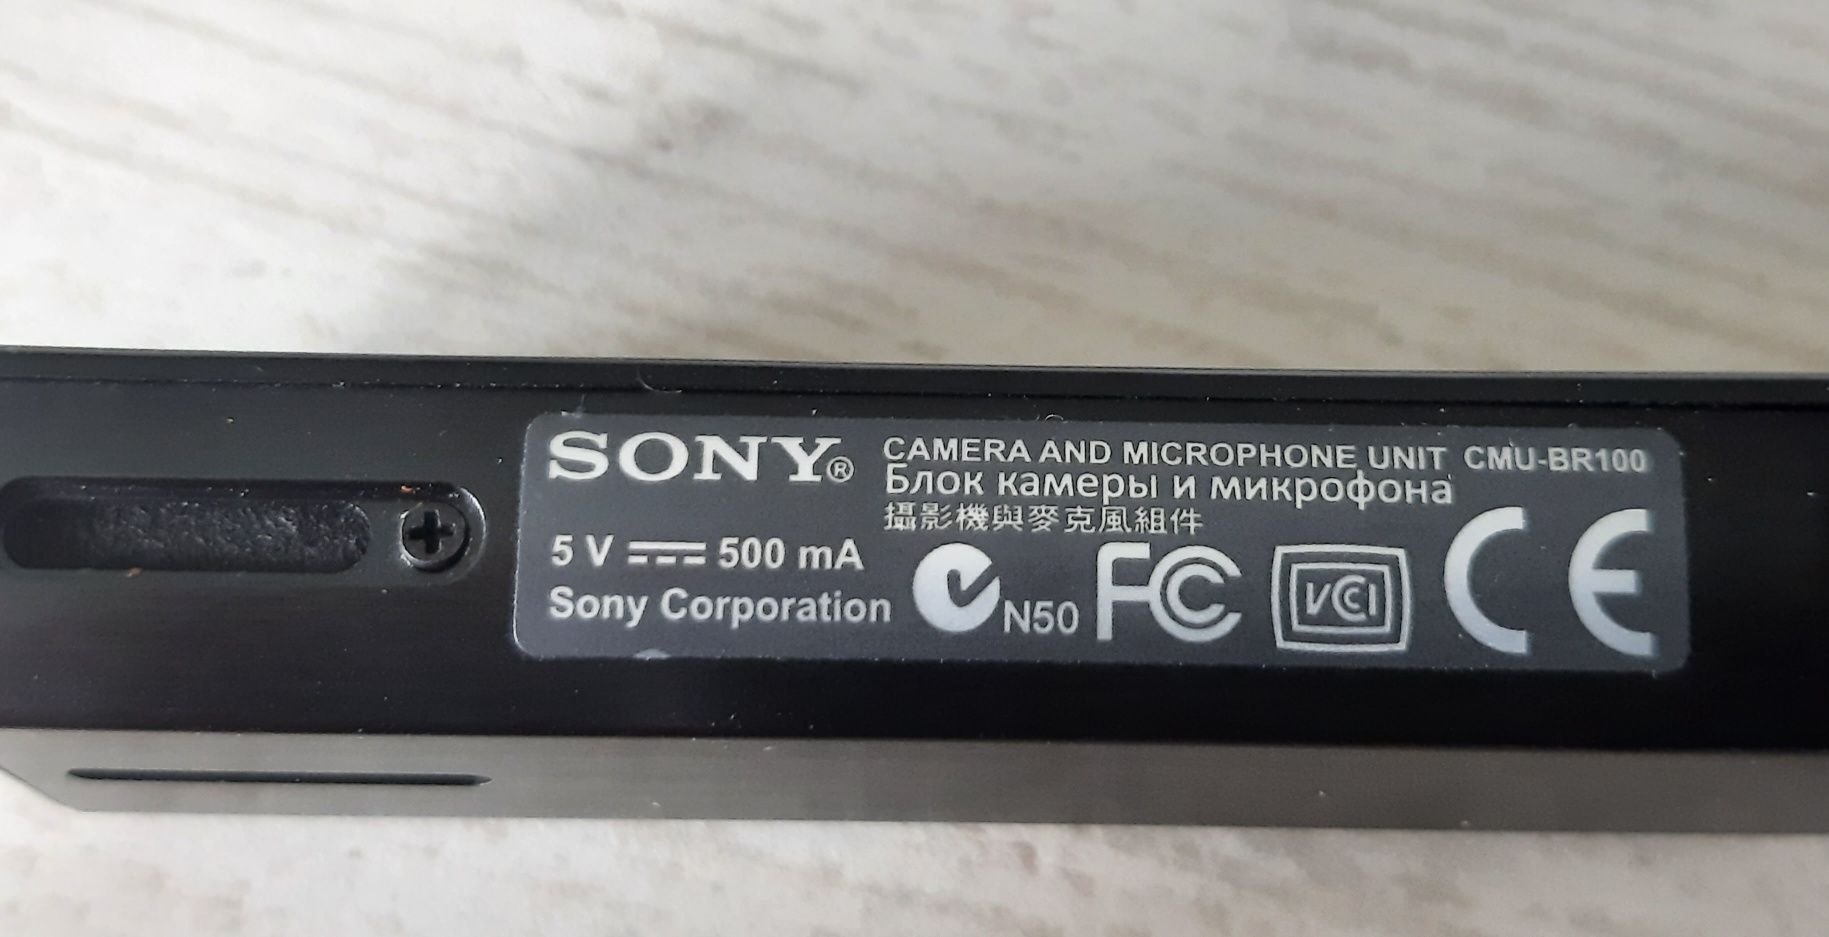 Kamera Sony CMU-BR100 do telewizorów SONY